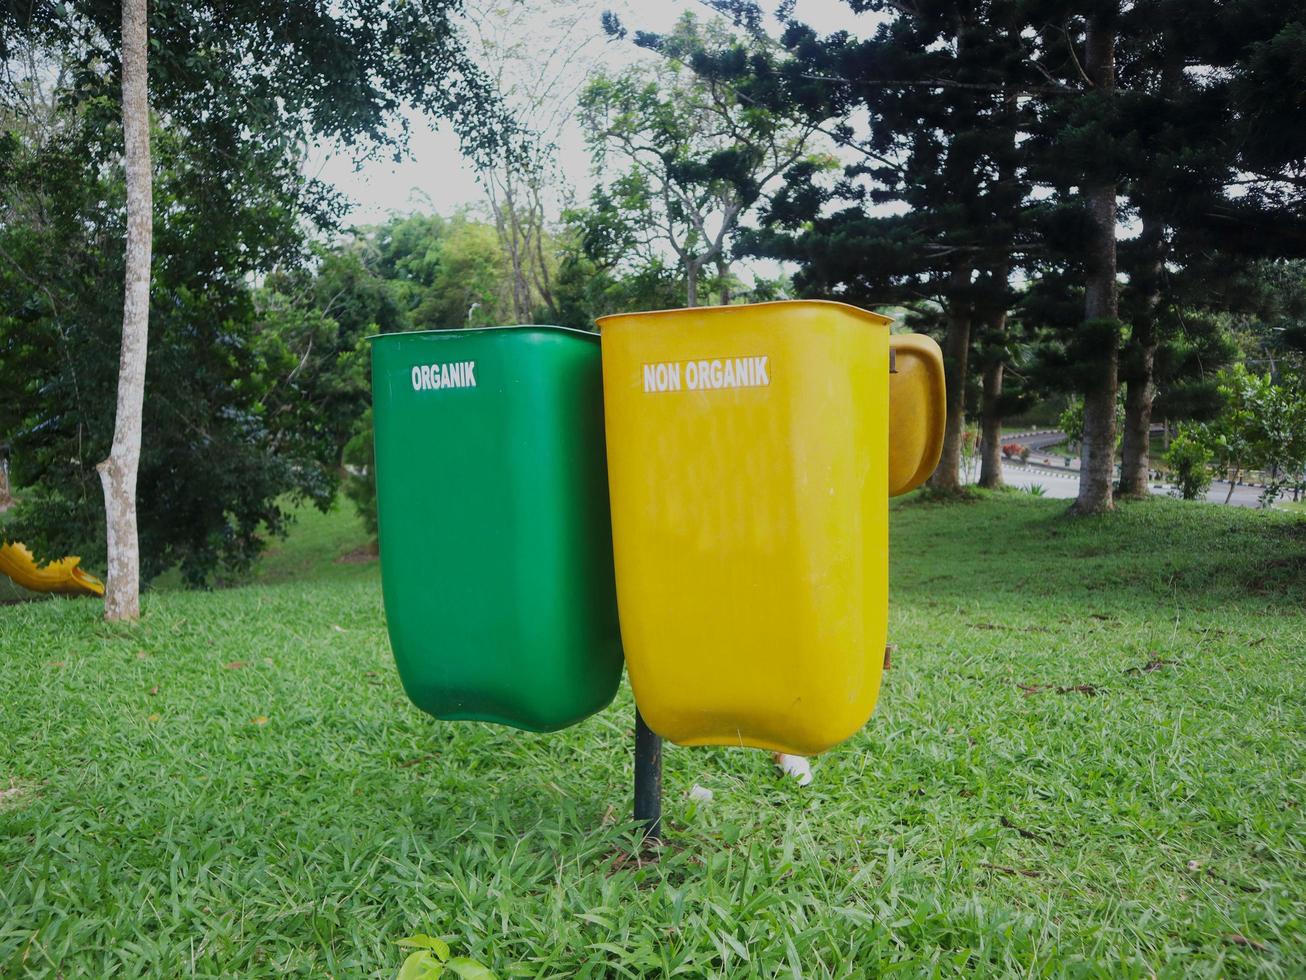 gula kärl för oorganiskt avfall som inte kan återvinnas och grönt för återvinningsbart organiskt avfall. placeras i en park foto